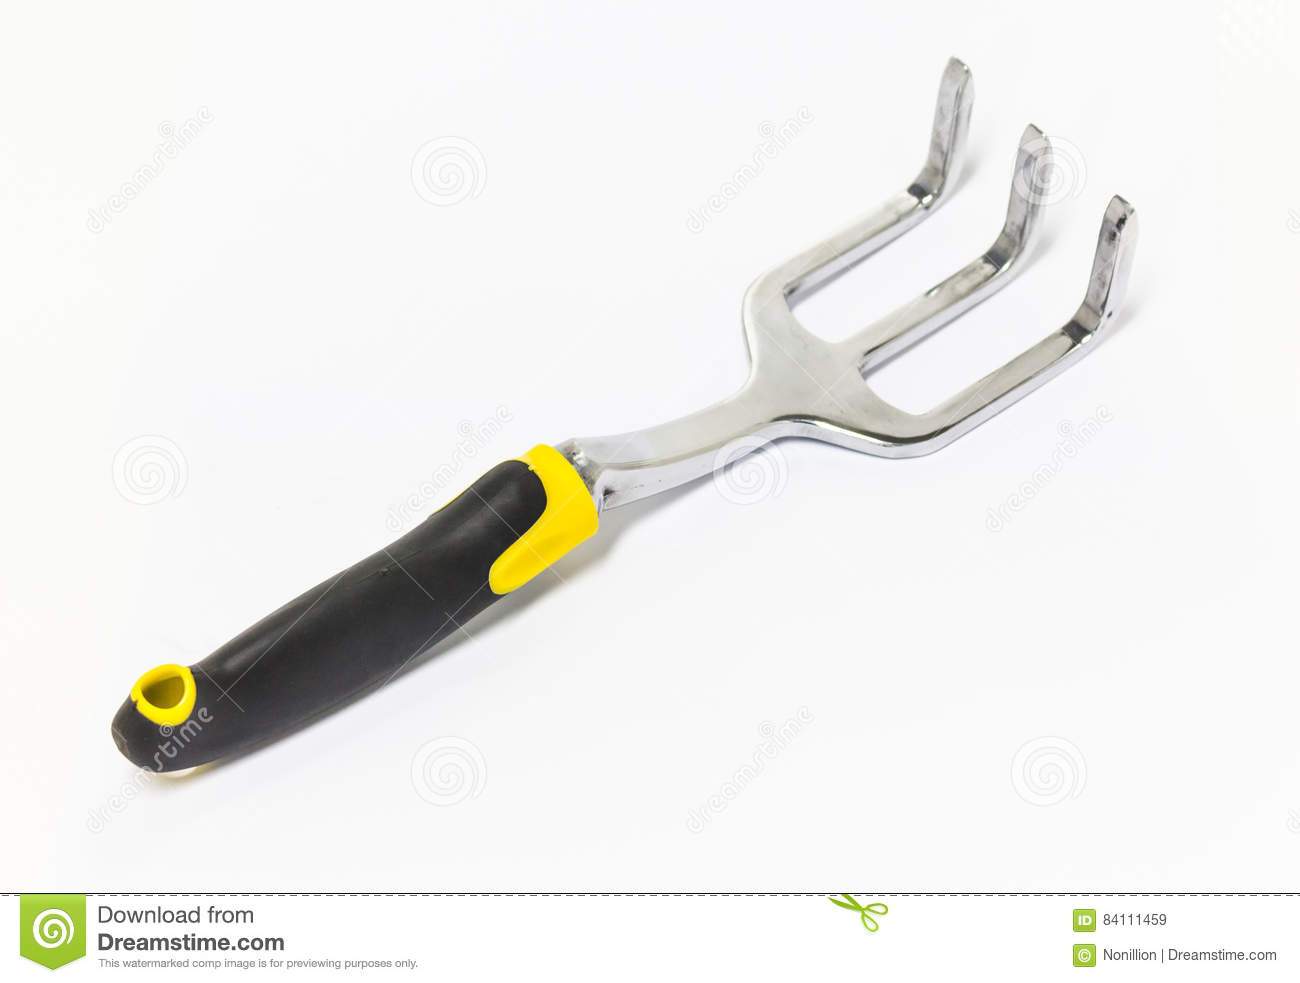 Garden Tool Rubber Grip Rake DT1131 - Alibhai Shariff Direct